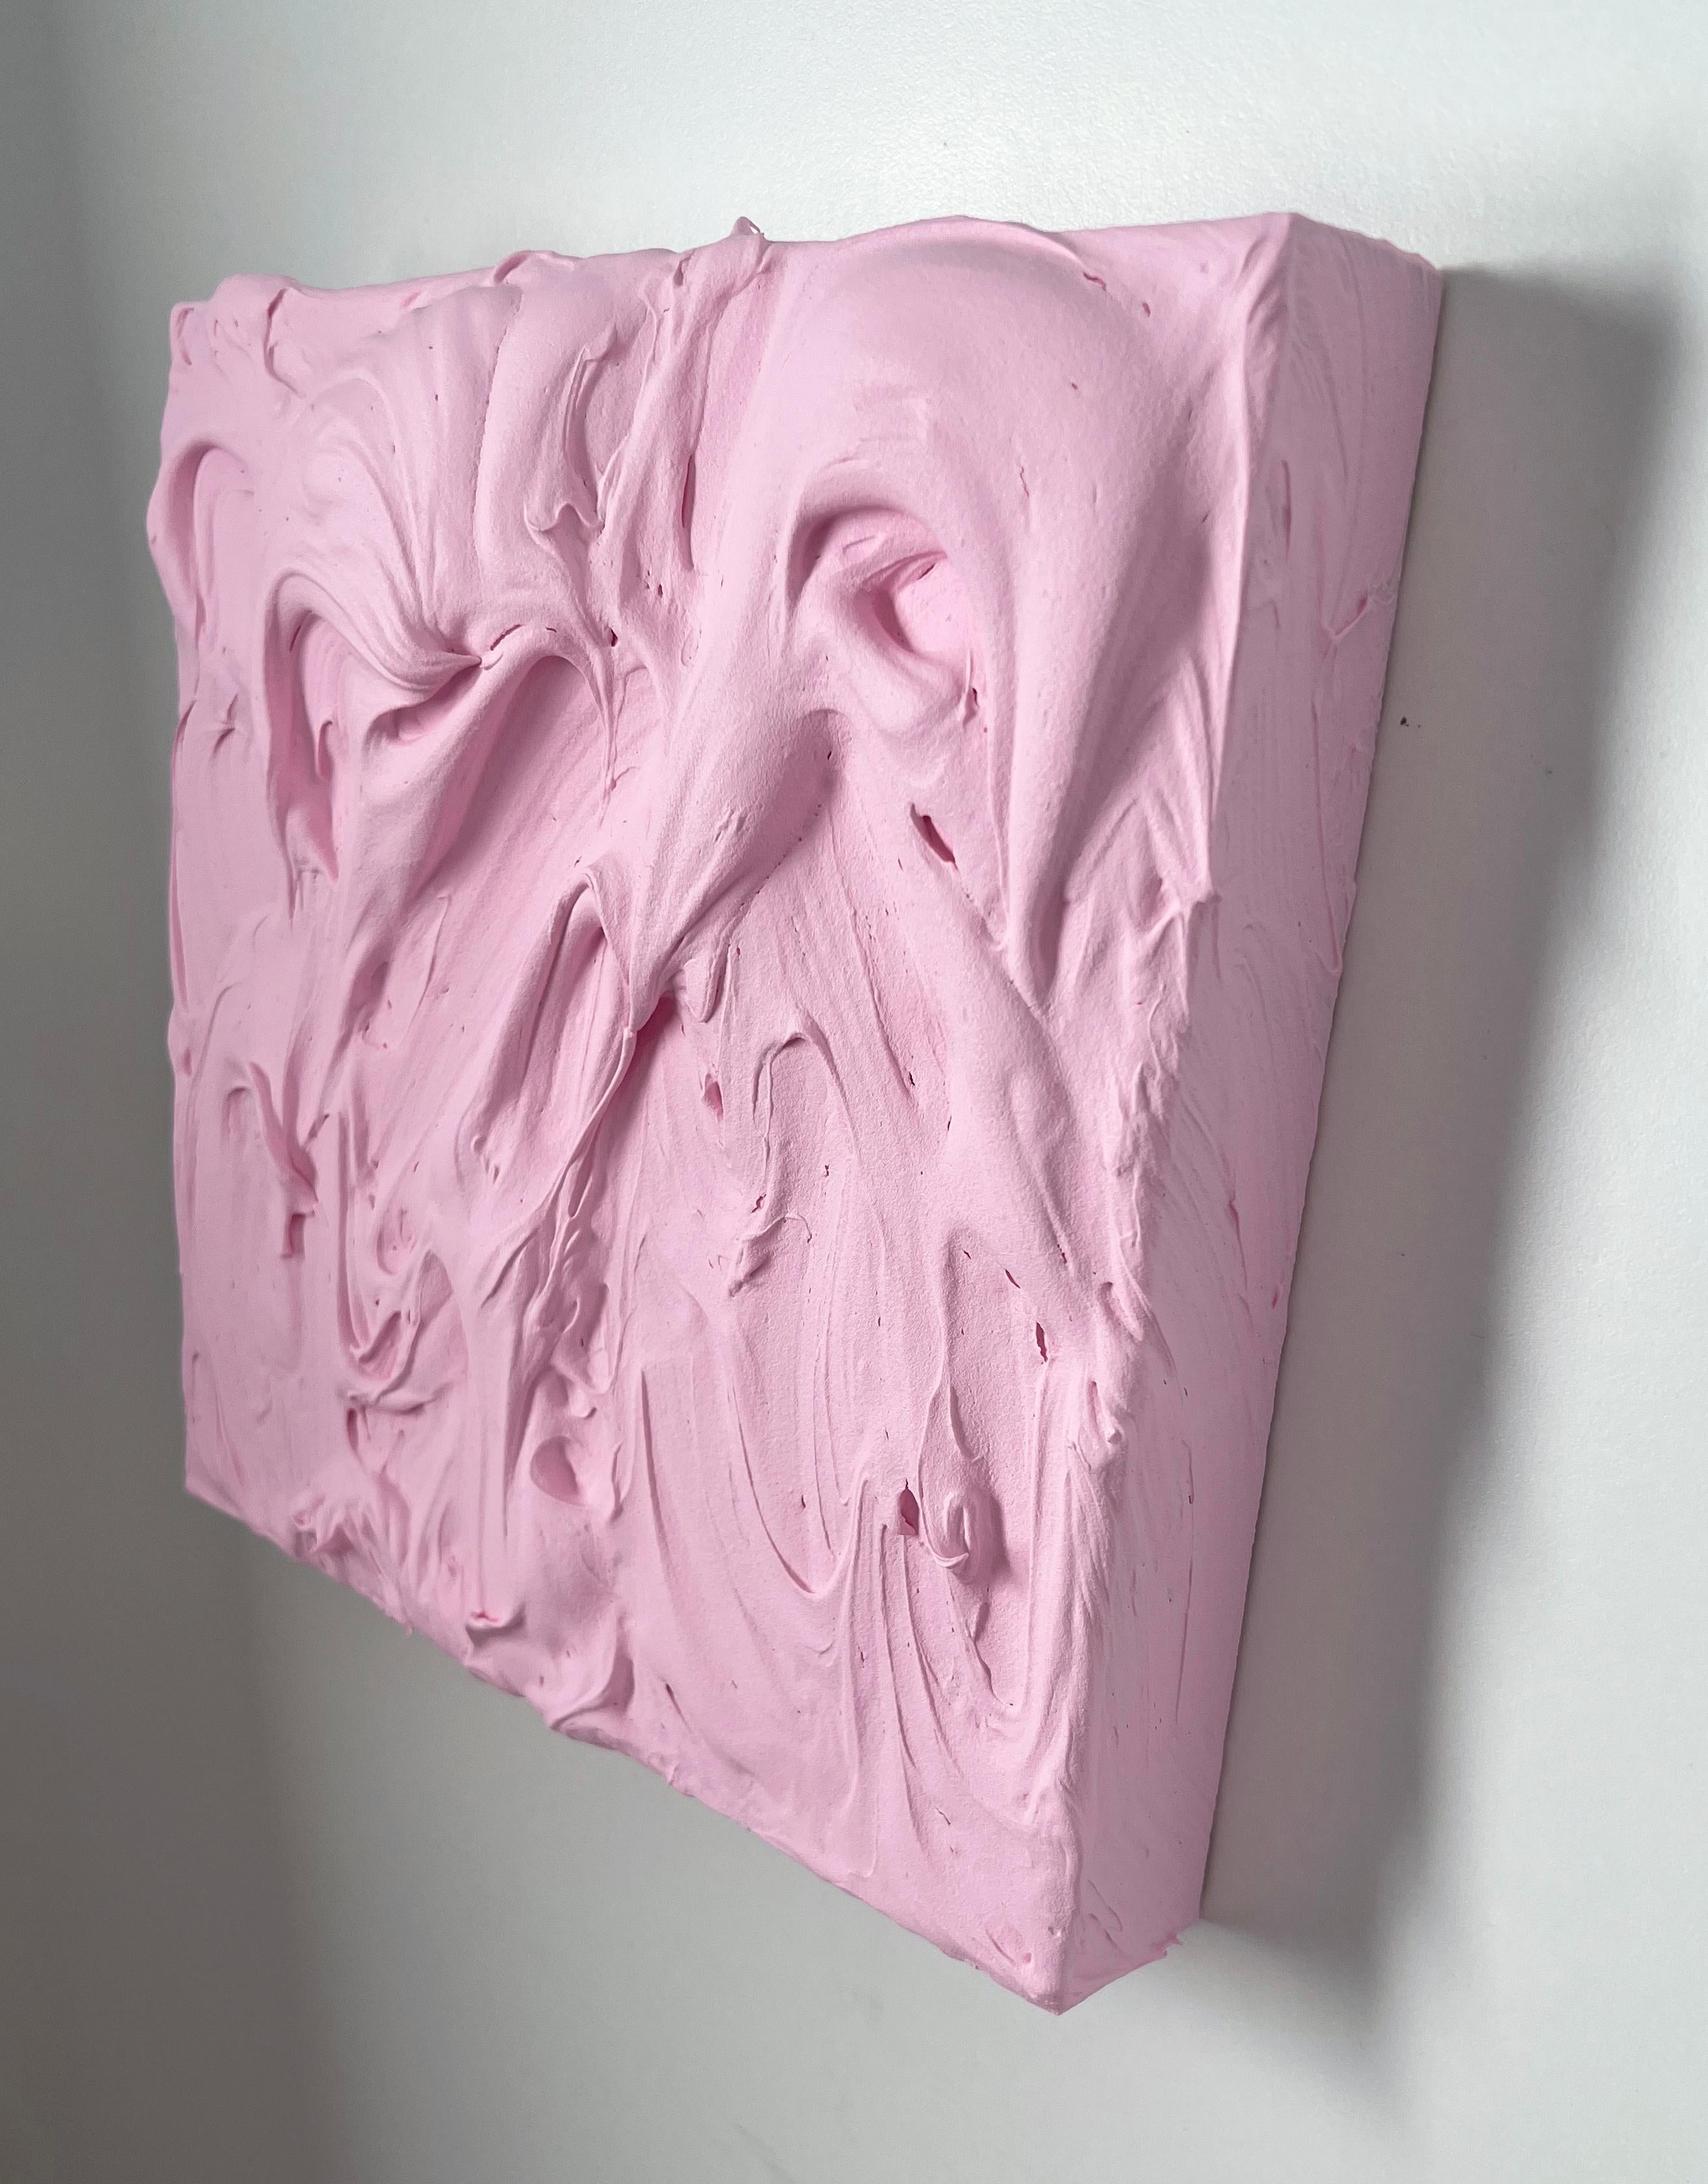 Baby Pink Excess (Rose Impasto dicke Malerei monochrome Pop Quadrat Design) (Pop-Art), Sculpture, von Chloe Hedden